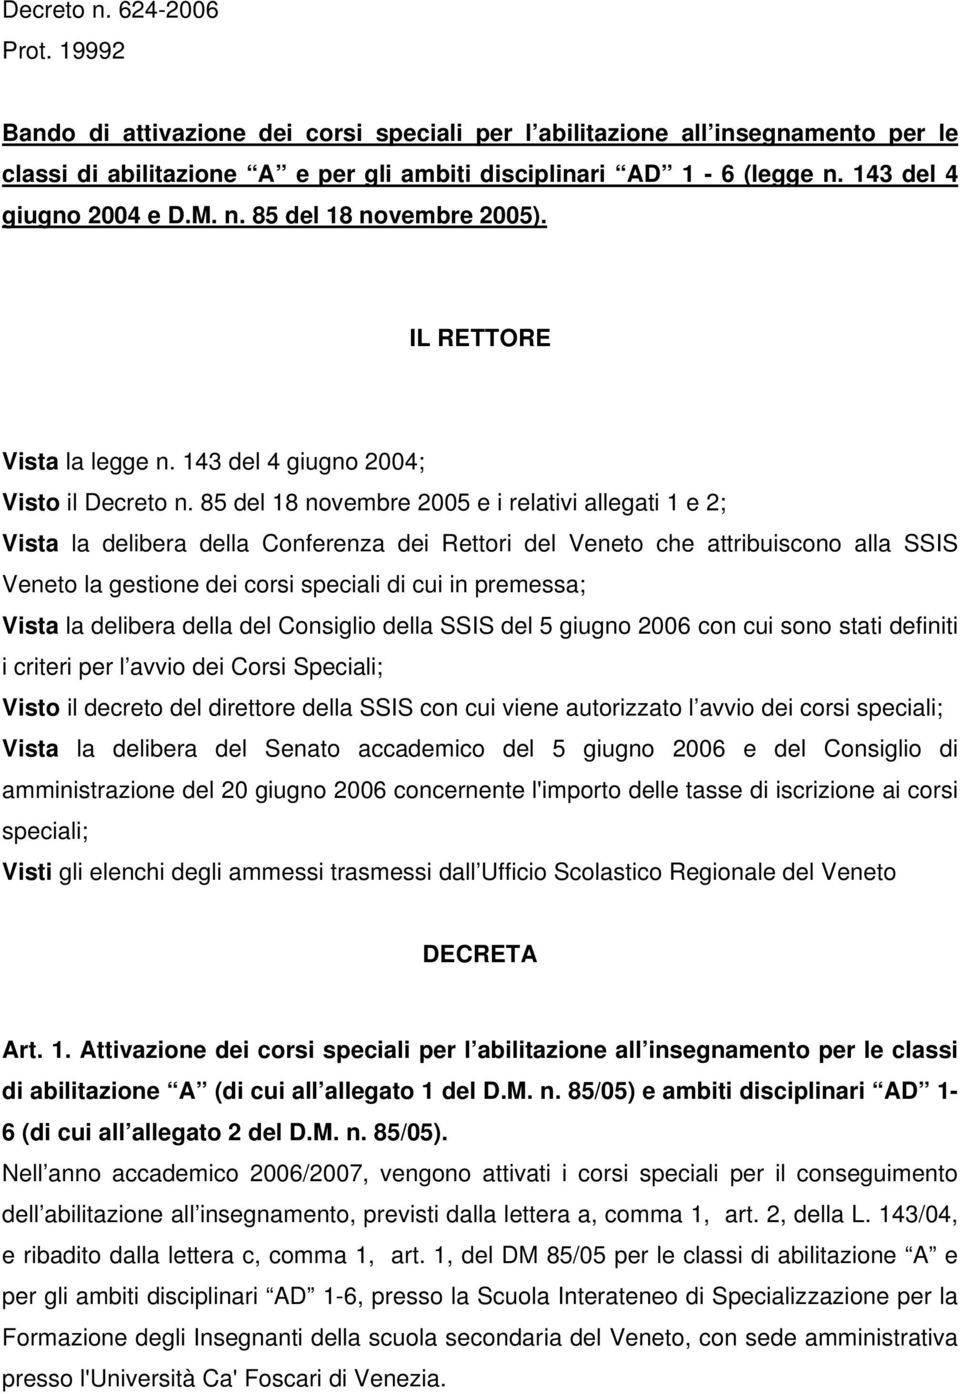 85 del 18 novembre 2005 e i relativi allegati 1 e 2; Vista la delibera della Conferenza dei Rettori del Veneto che attribuiscono alla SSIS Veneto la gestione dei corsi speciali di cui in premessa;